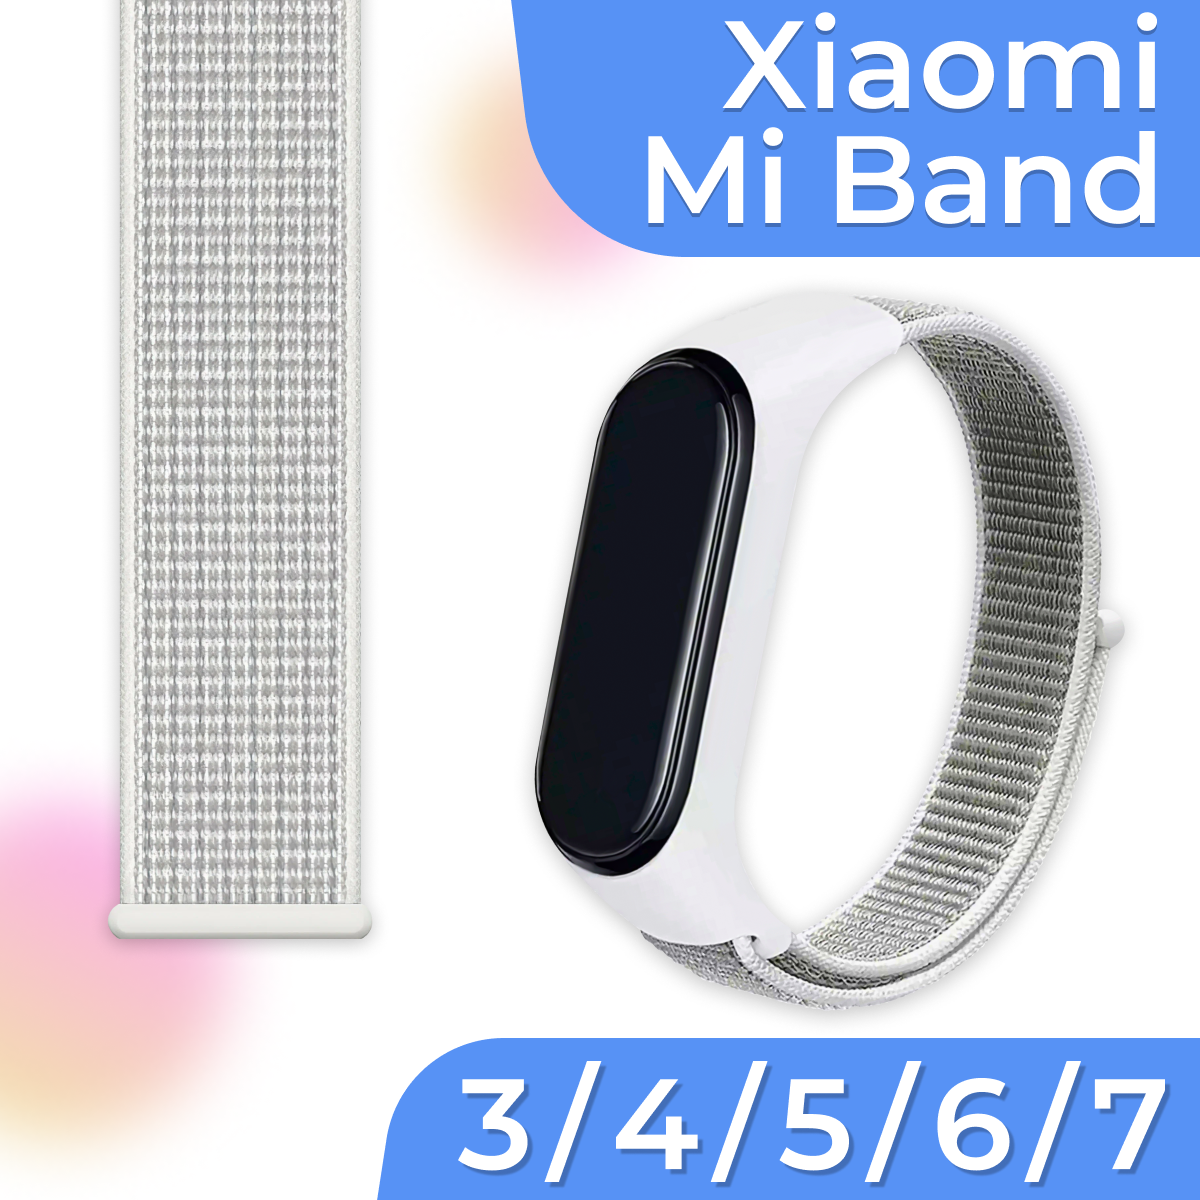 Нейлоновый браслет для умных смарт часов Xiaomi Mi Band 3, 4, 5, 6, 7 / Тканевый ремешок для фитнес трекера Сяоми Ми Бэнд 3, 4, 5, 6, 7 / Белый